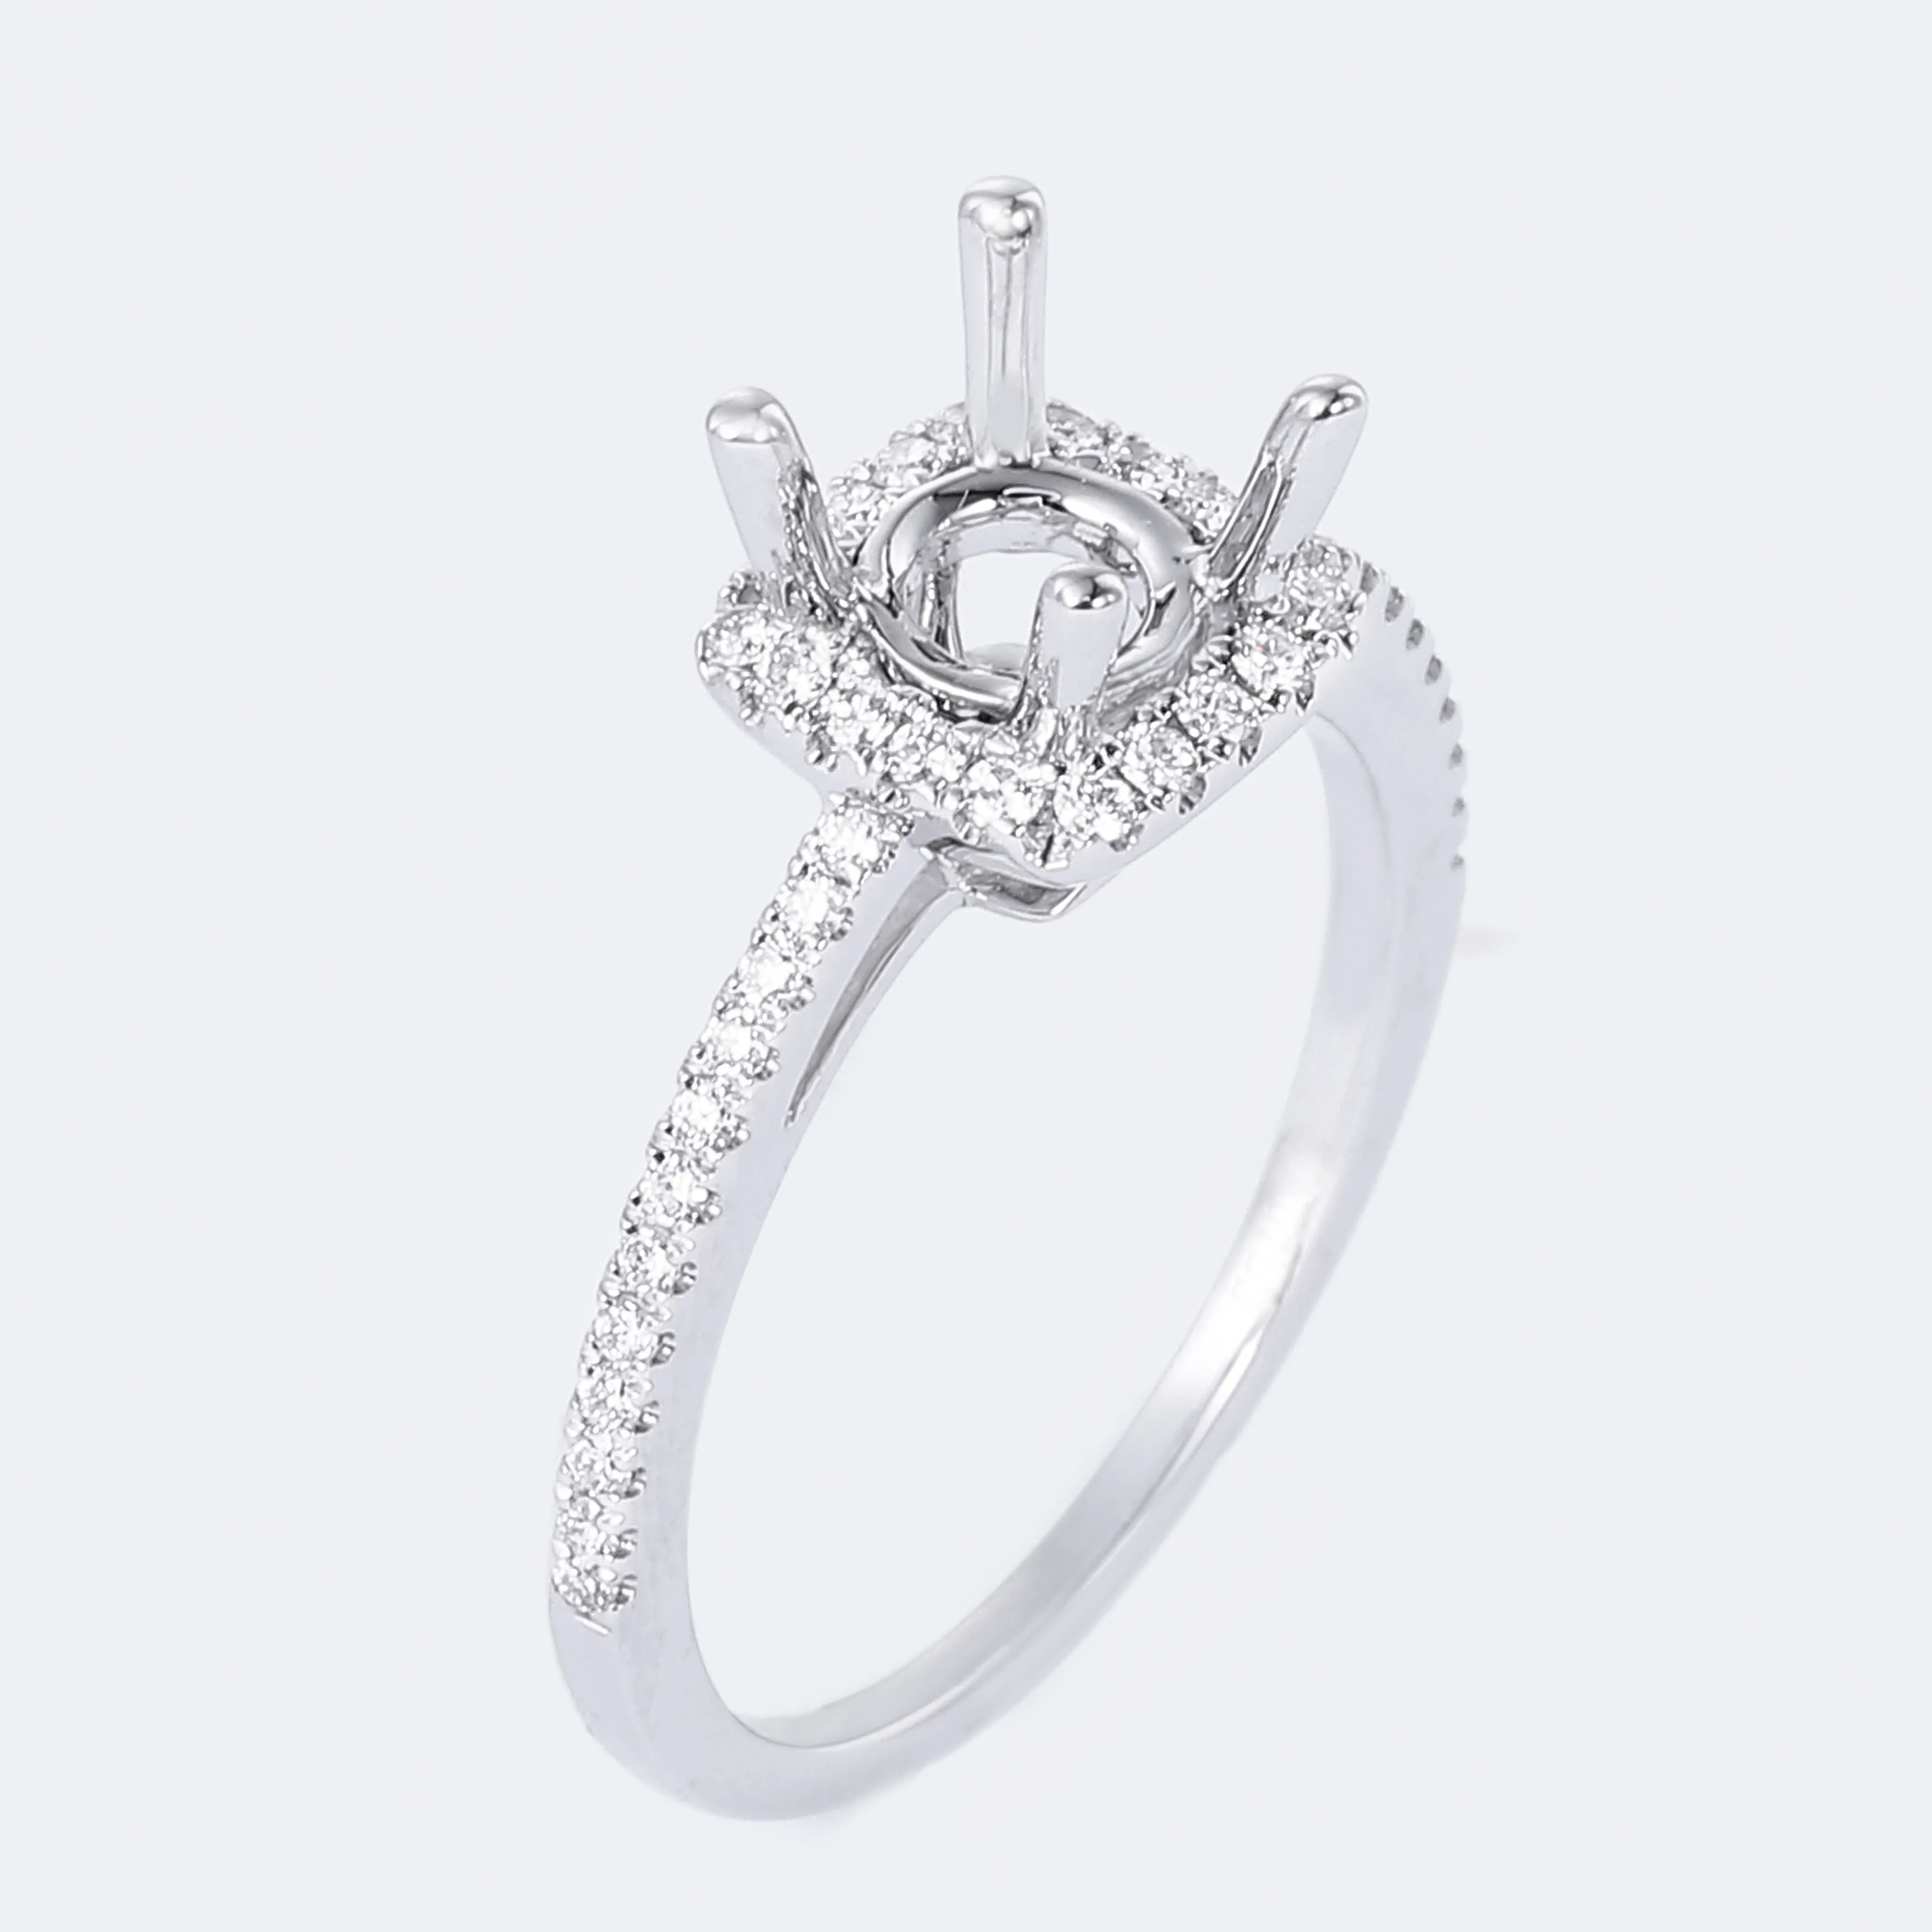 Gioielleria all'ingrosso di prodotti fini anello di fidanzamento con diamante solitario in oro bianco massiccio 18 carati con montatura Semi-montaggio